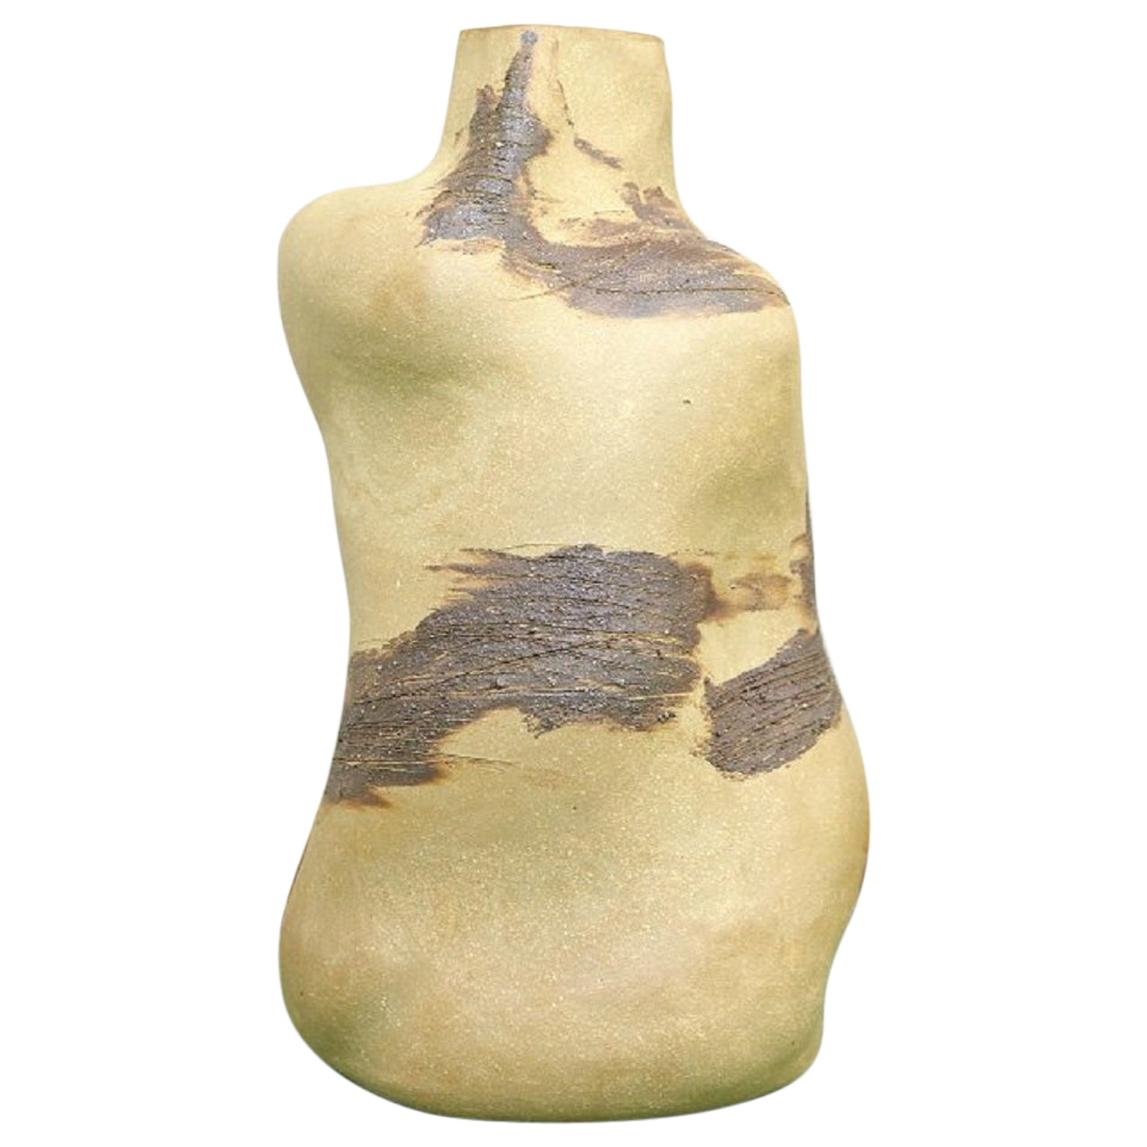 Christina Muff, plastische Vase in Flaschenform aus goldenem Steingut